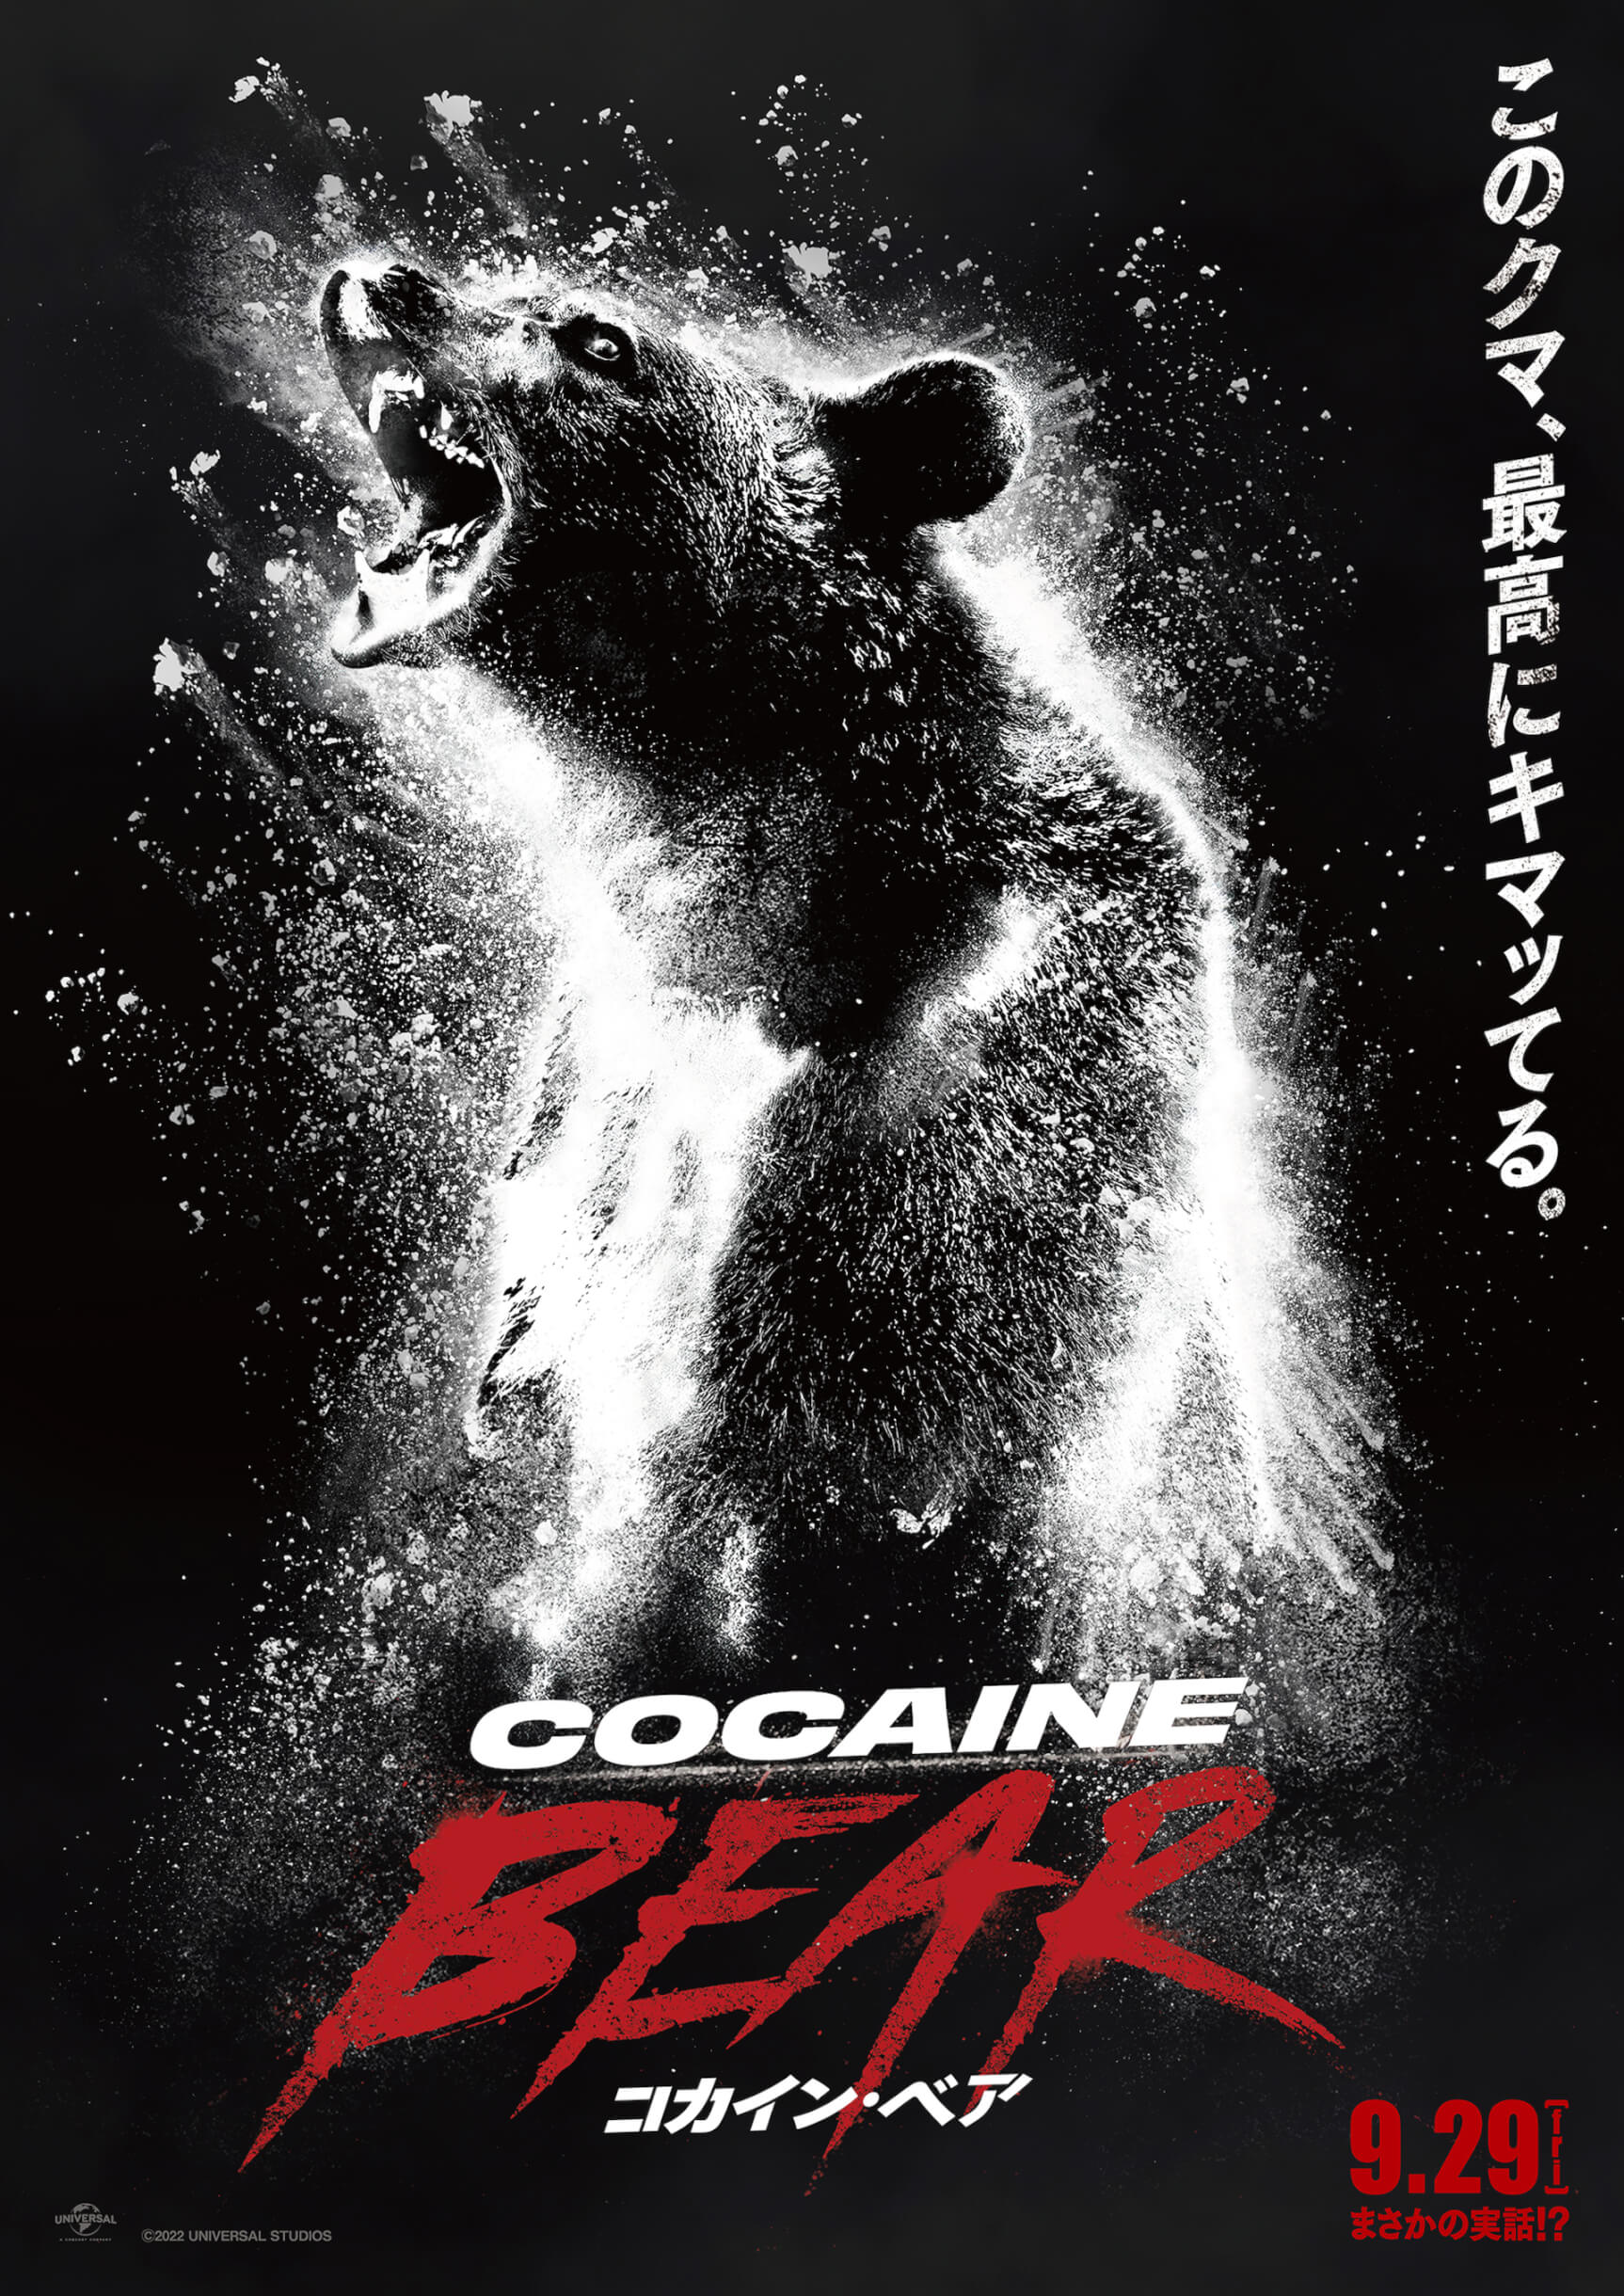 クマがコカインを食べちゃった！実話を元にした映画『コカイン・ベア』9月29日より日本公開｜ムビチケ特典は吸引厳禁のオリジナル入浴剤 film230622-cocaine-bear1